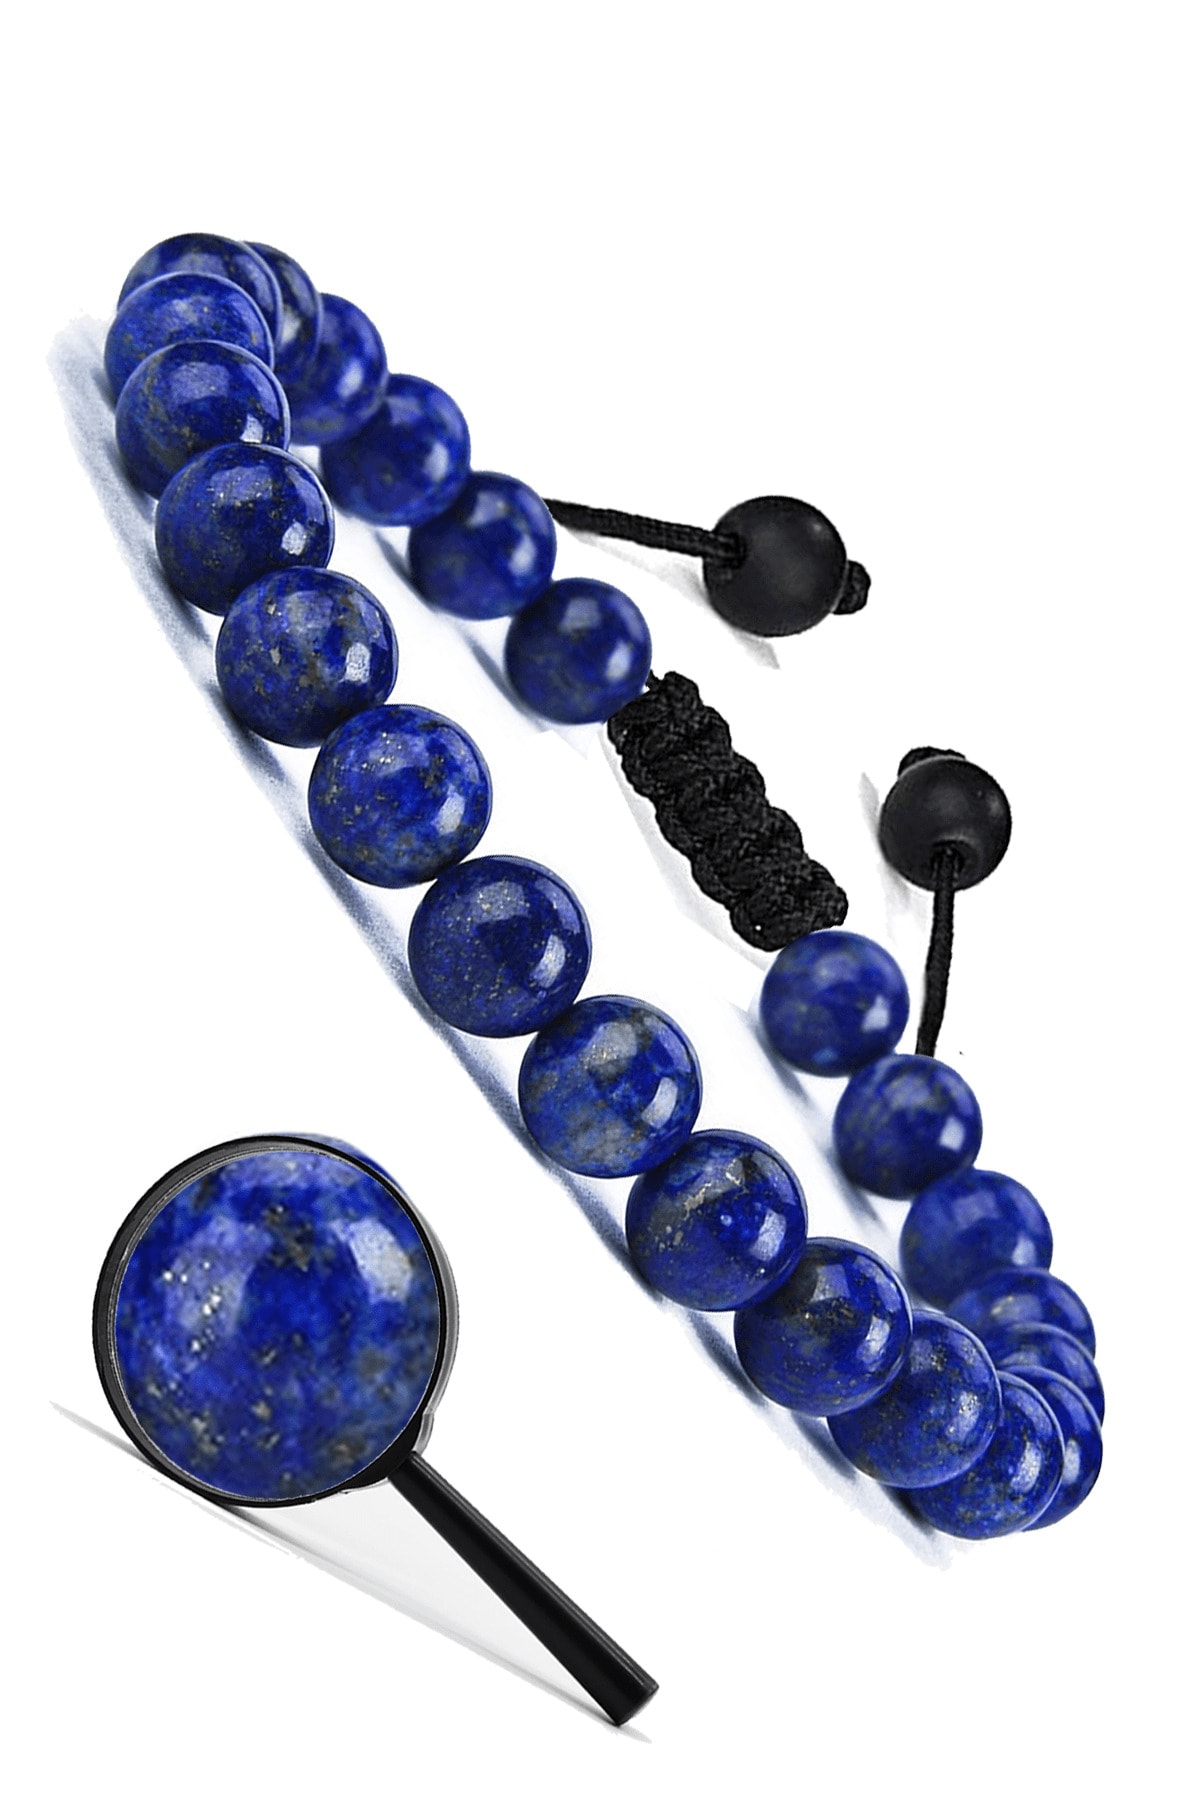 Tesbih Atölyesi Sertifikalı Aaa Kalite Doğal Lapis Lazuli Taşı Bileklik